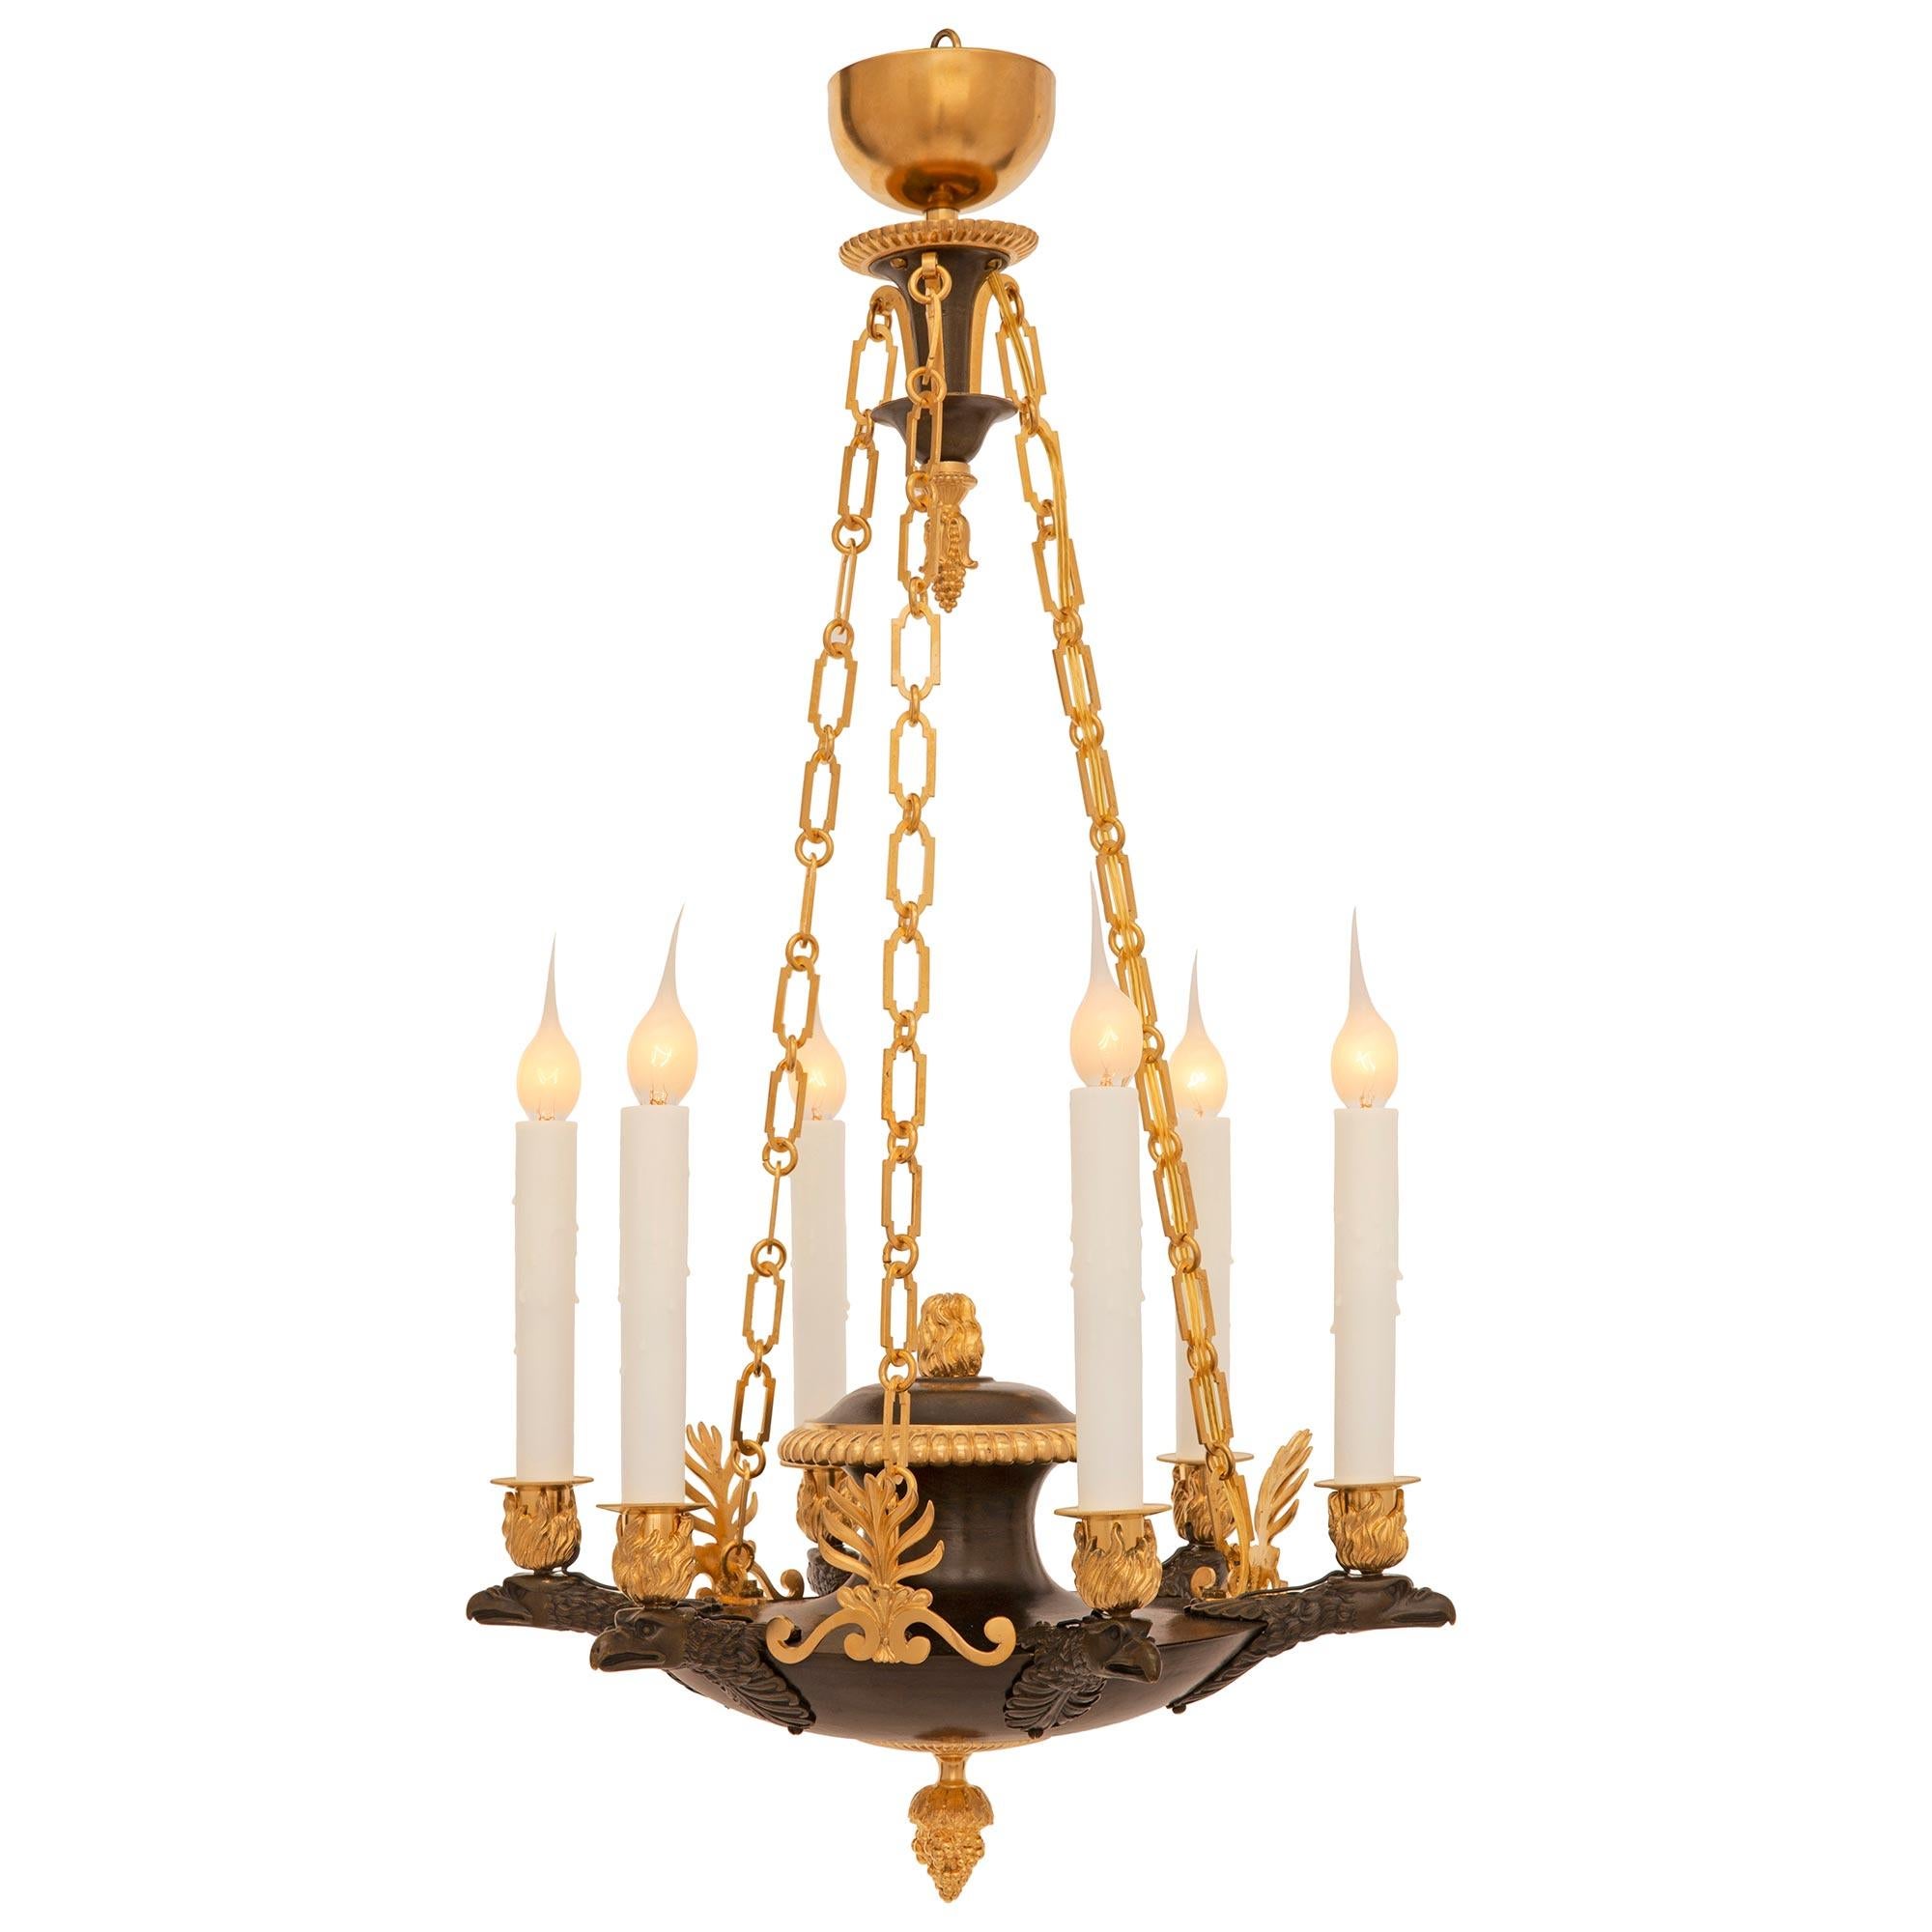 Un lustre néo-classique français du 19ème siècle en bronze patiné et bronze doré. Le lustre à six bras est centré par un magnifique épi de faîtage en bronze doré richement ciselé sous l'élégant corps arrondi avec des palmettes finement détaillées et